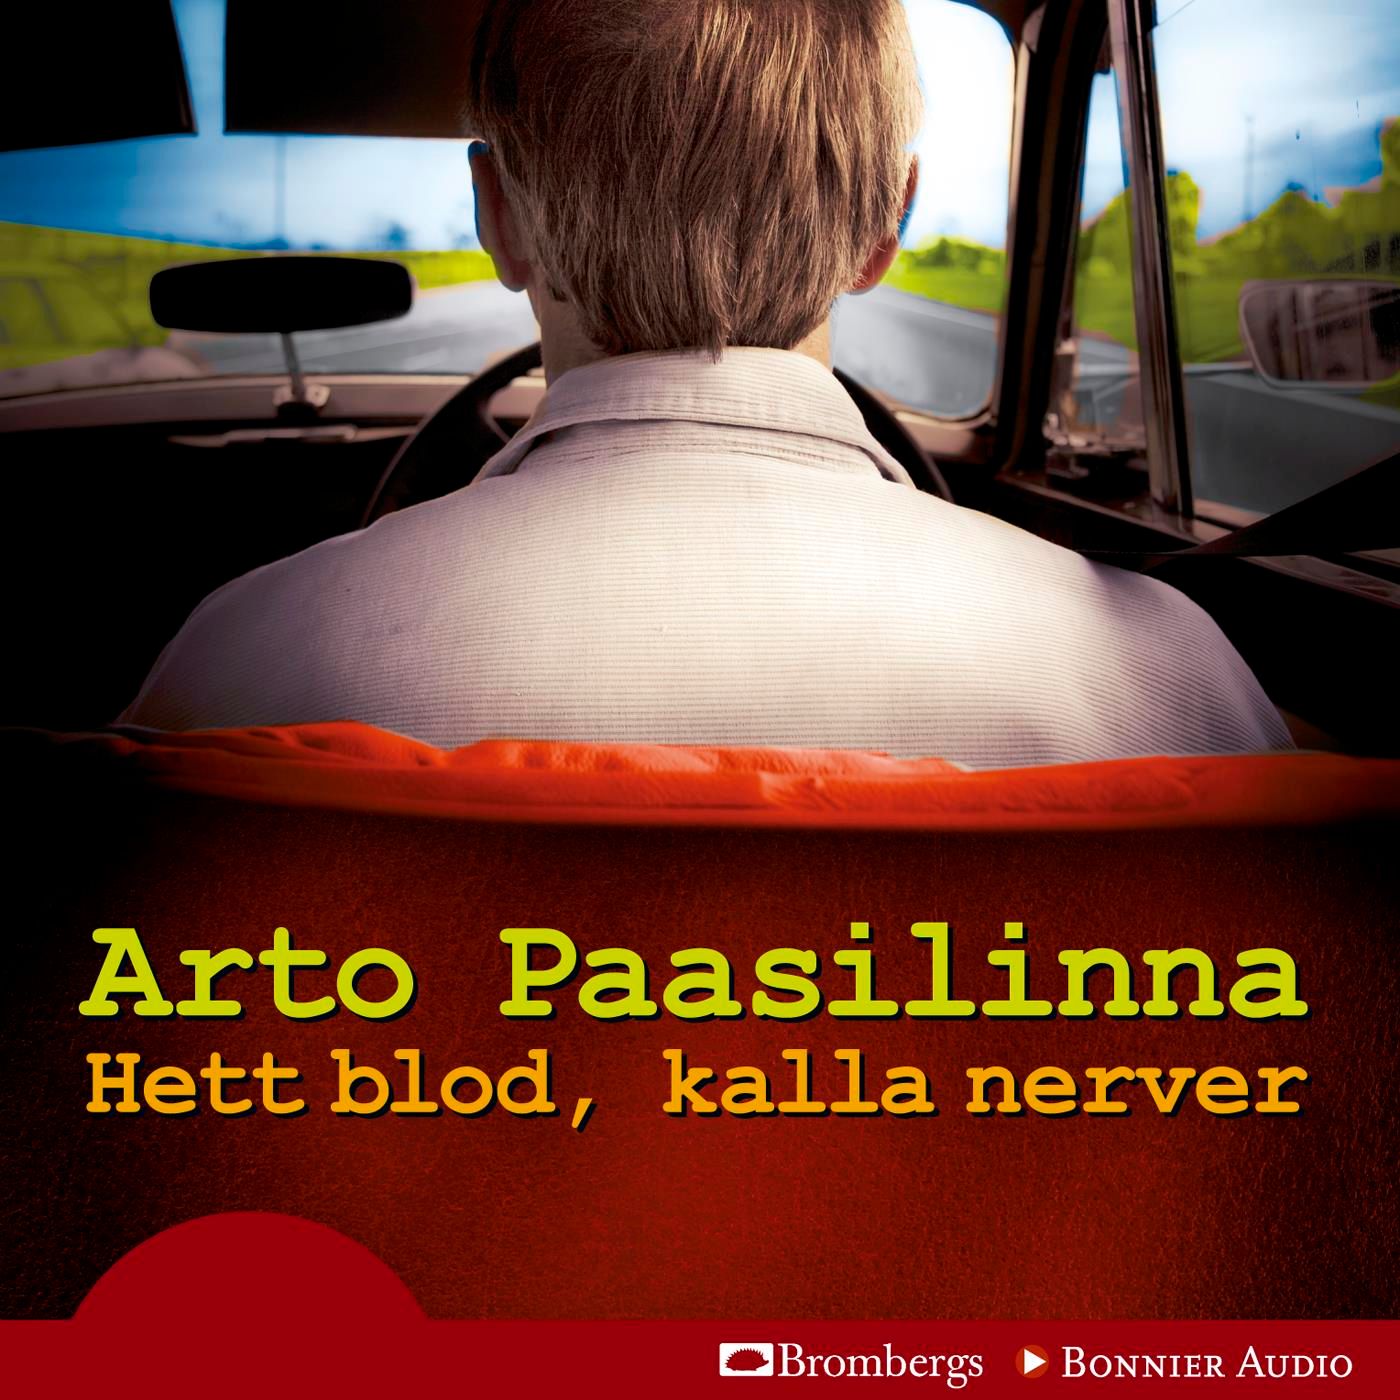 Hett blod, kalla nerver, ljudbok av Arto Paasilinna